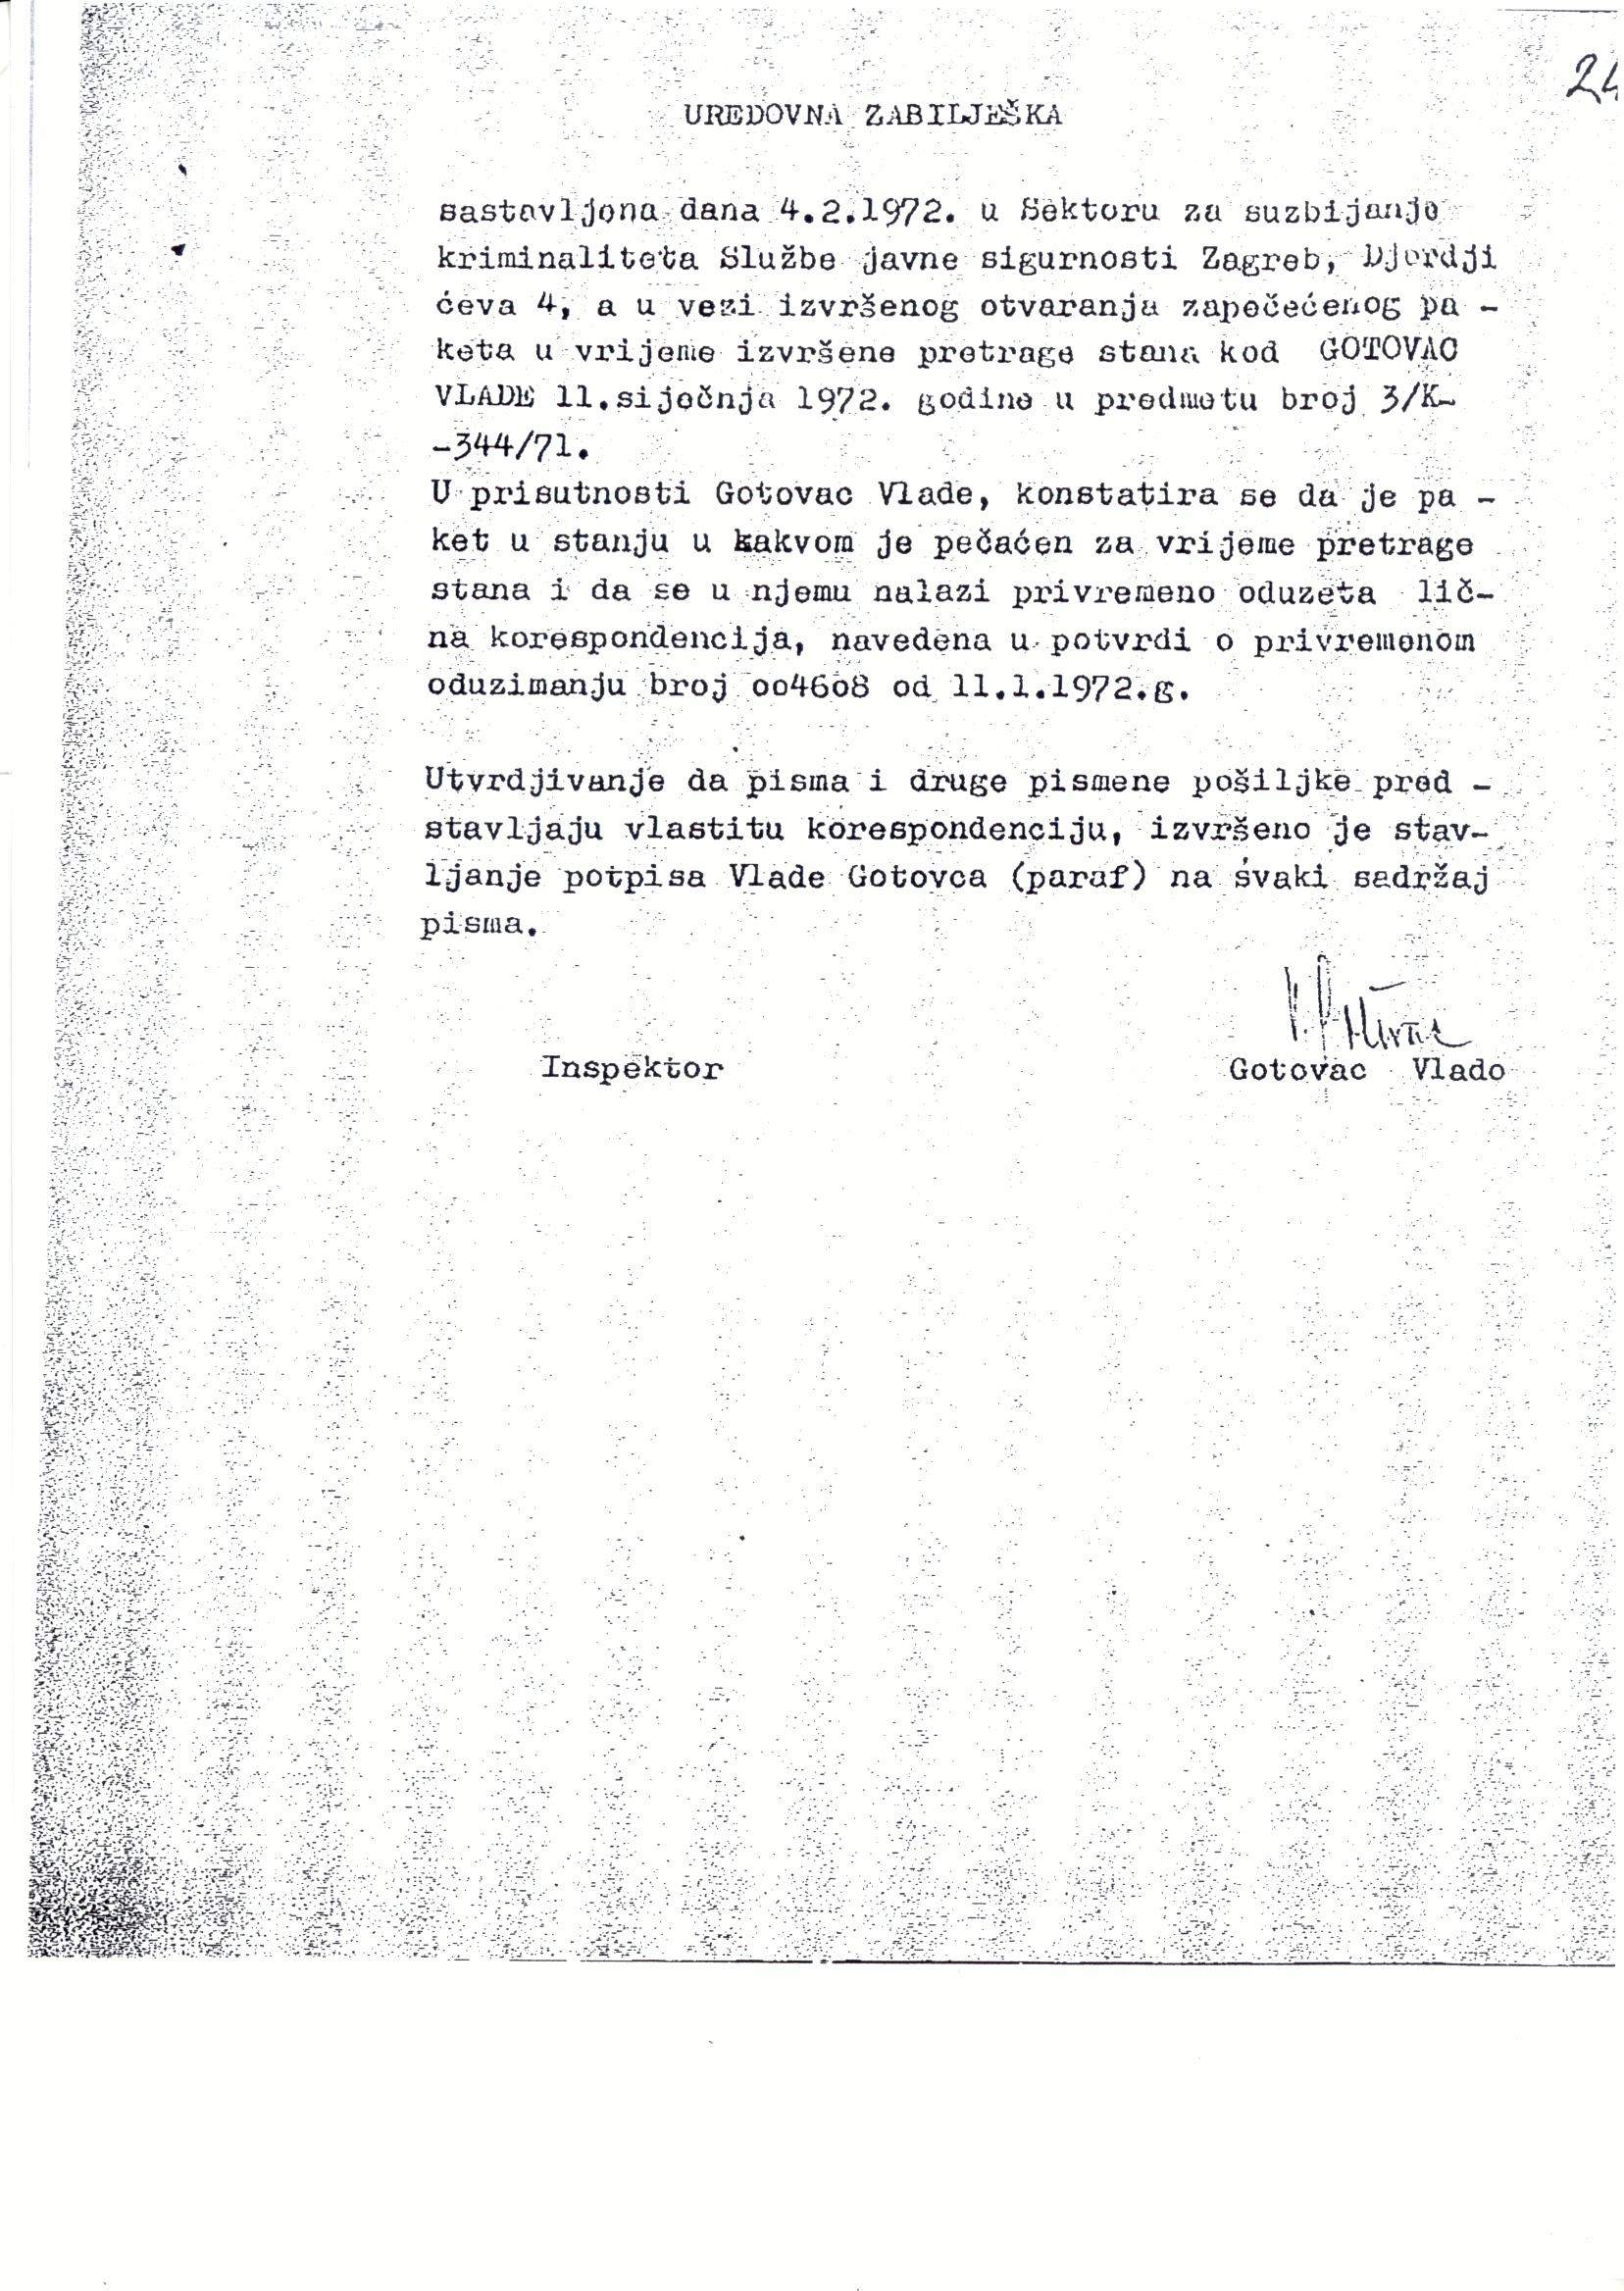 Službena bilješka iz dosjea Vlade Gotovca o osobnoj korespondenciji oduzetoj prilikom pretresa stana, 4. veljače 1972. Arhivski dokument.